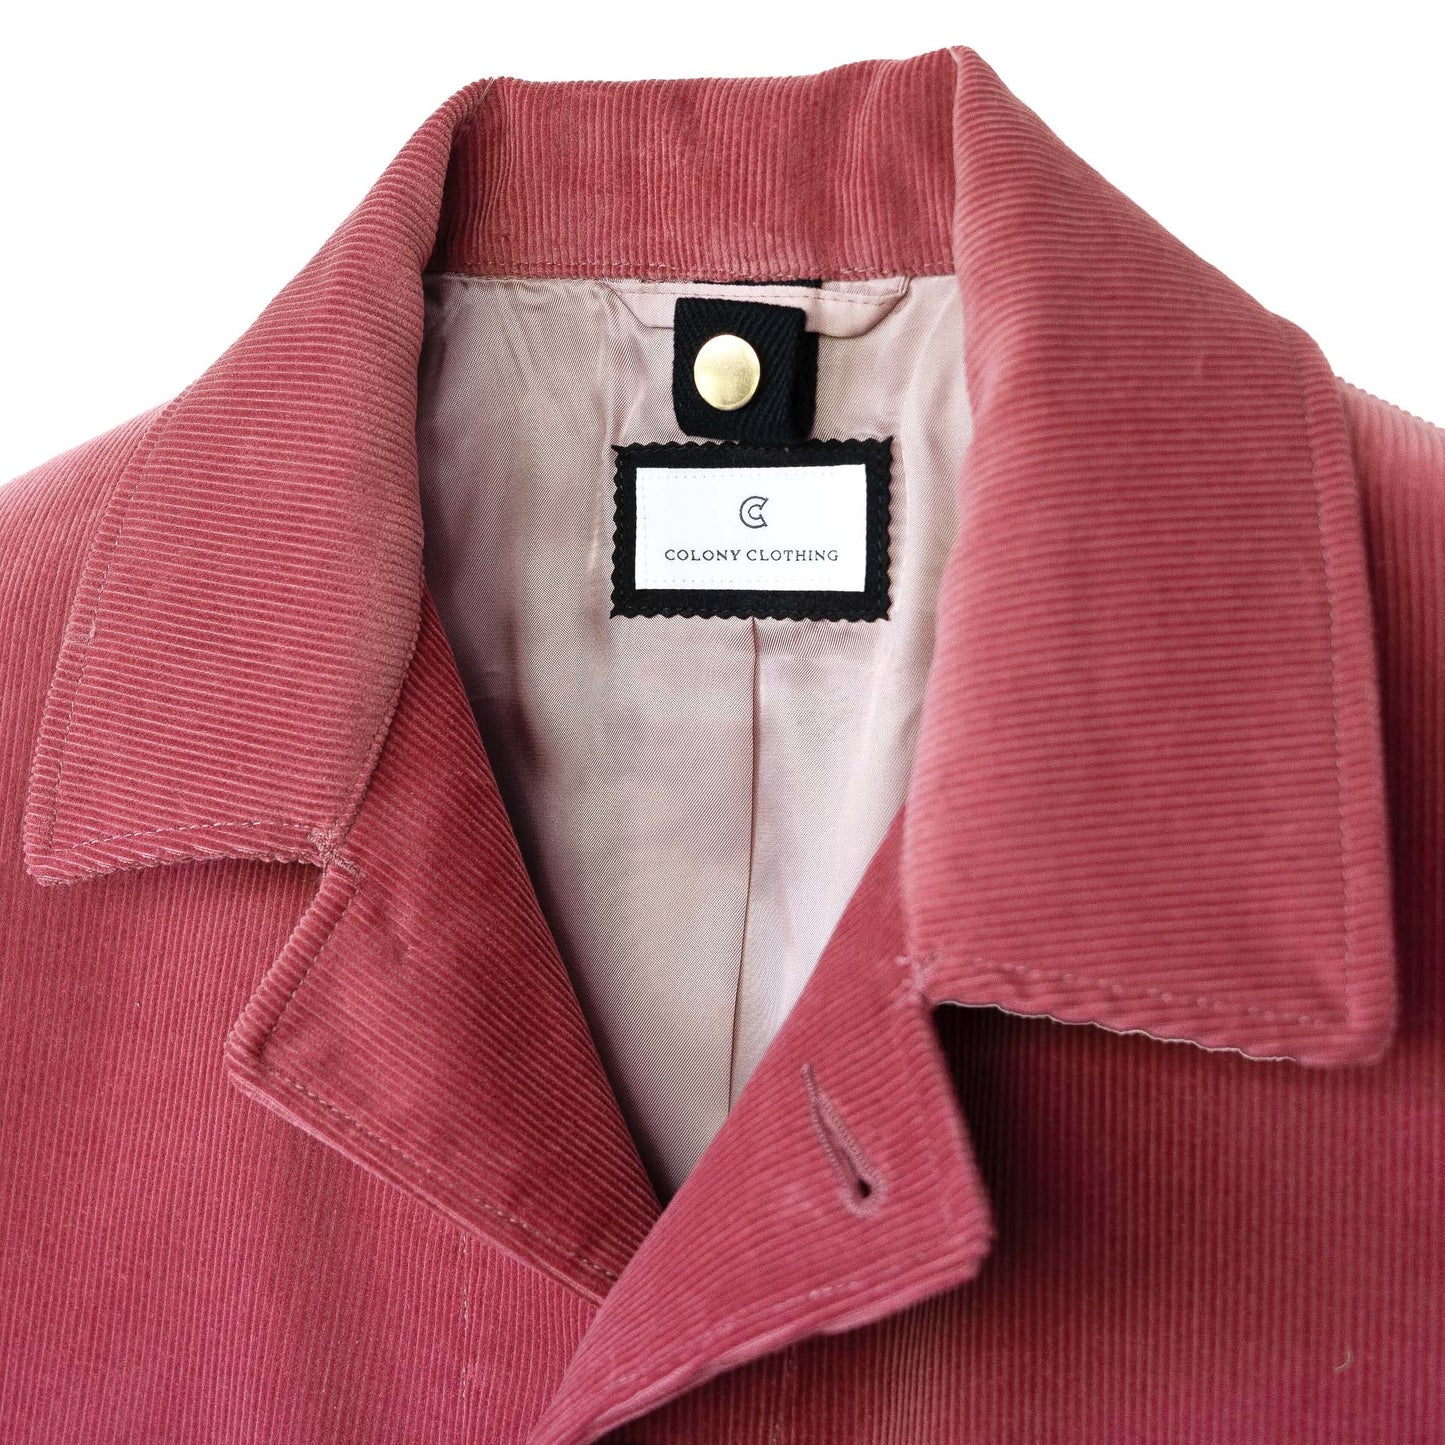 COLONY CLOTHING / BRISBANE MOSS コーデュロイ フィールドジャケット / CC2202-JK05-2